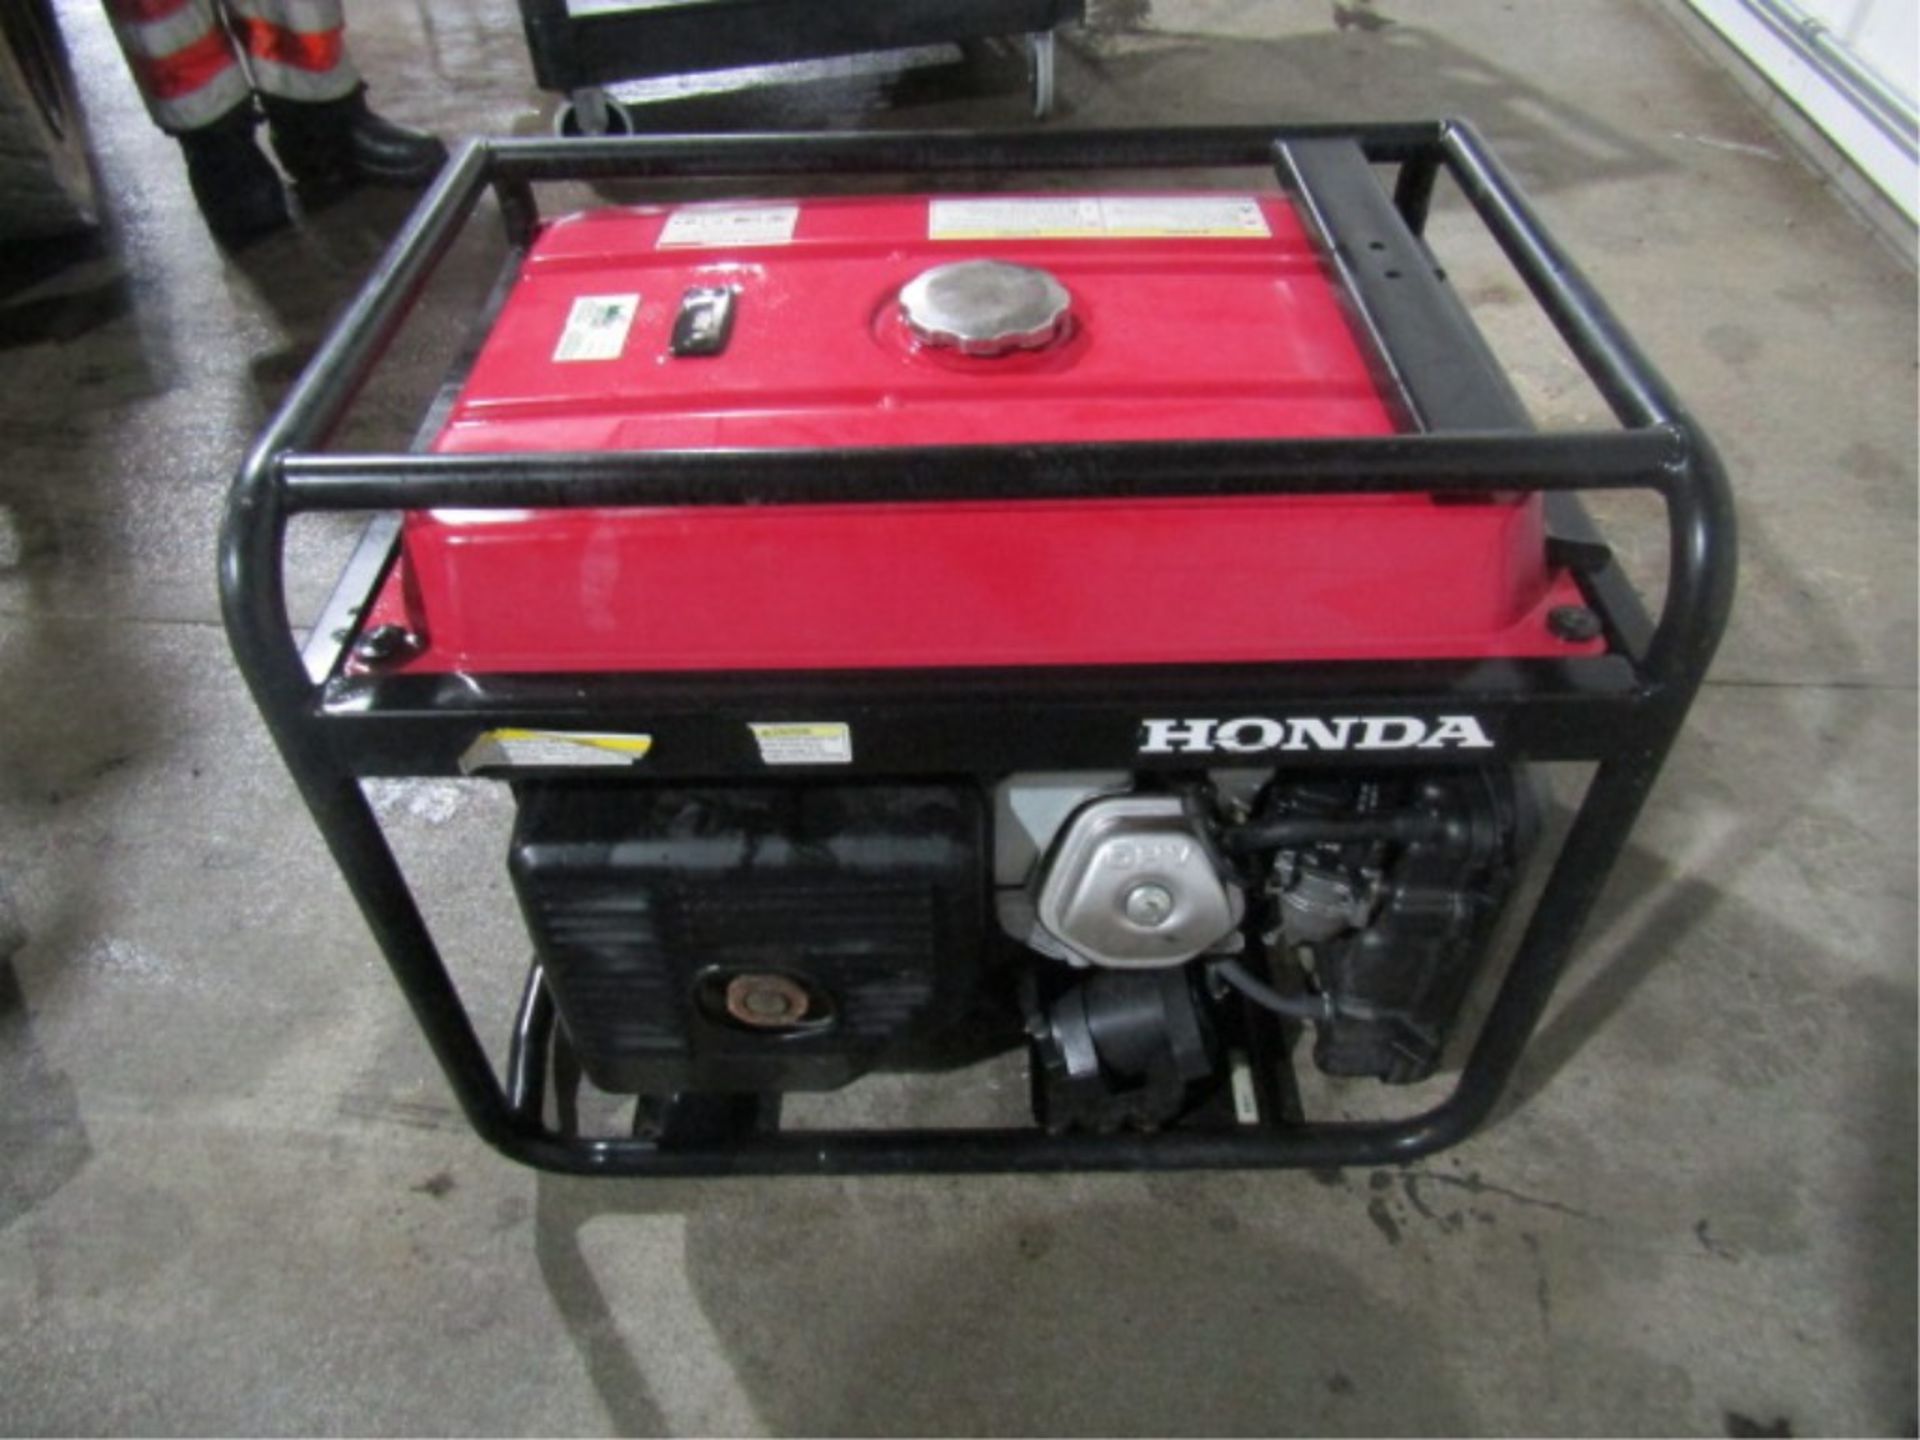 Honda EB 5000X Gas 120/240V Generator